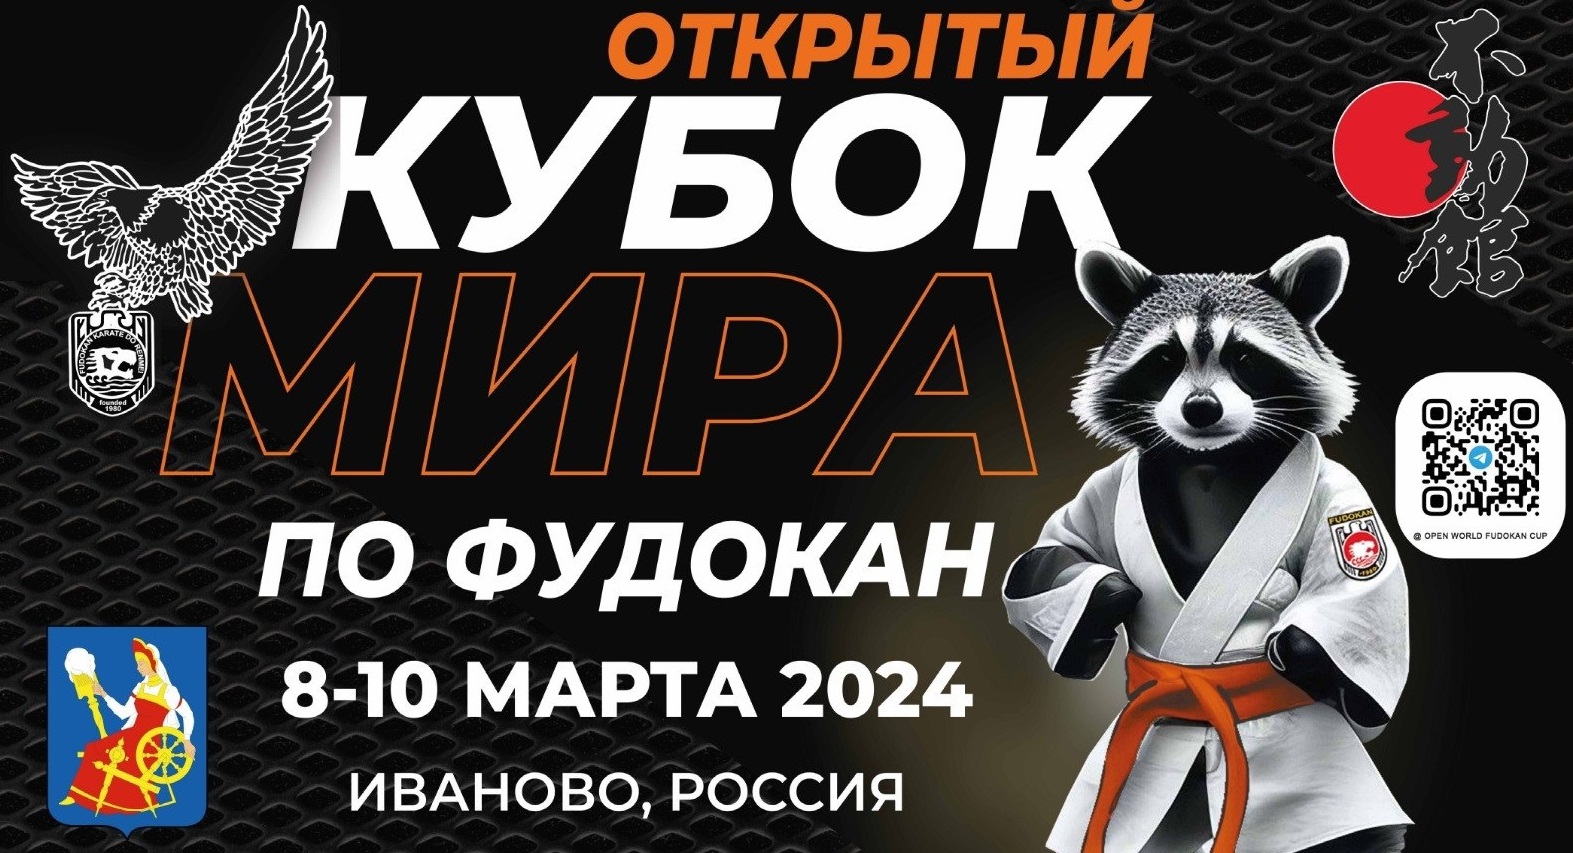 Около 1500 спортсменов приедут в Ивановскую область на Кубок мира по фудокан каратэ-до